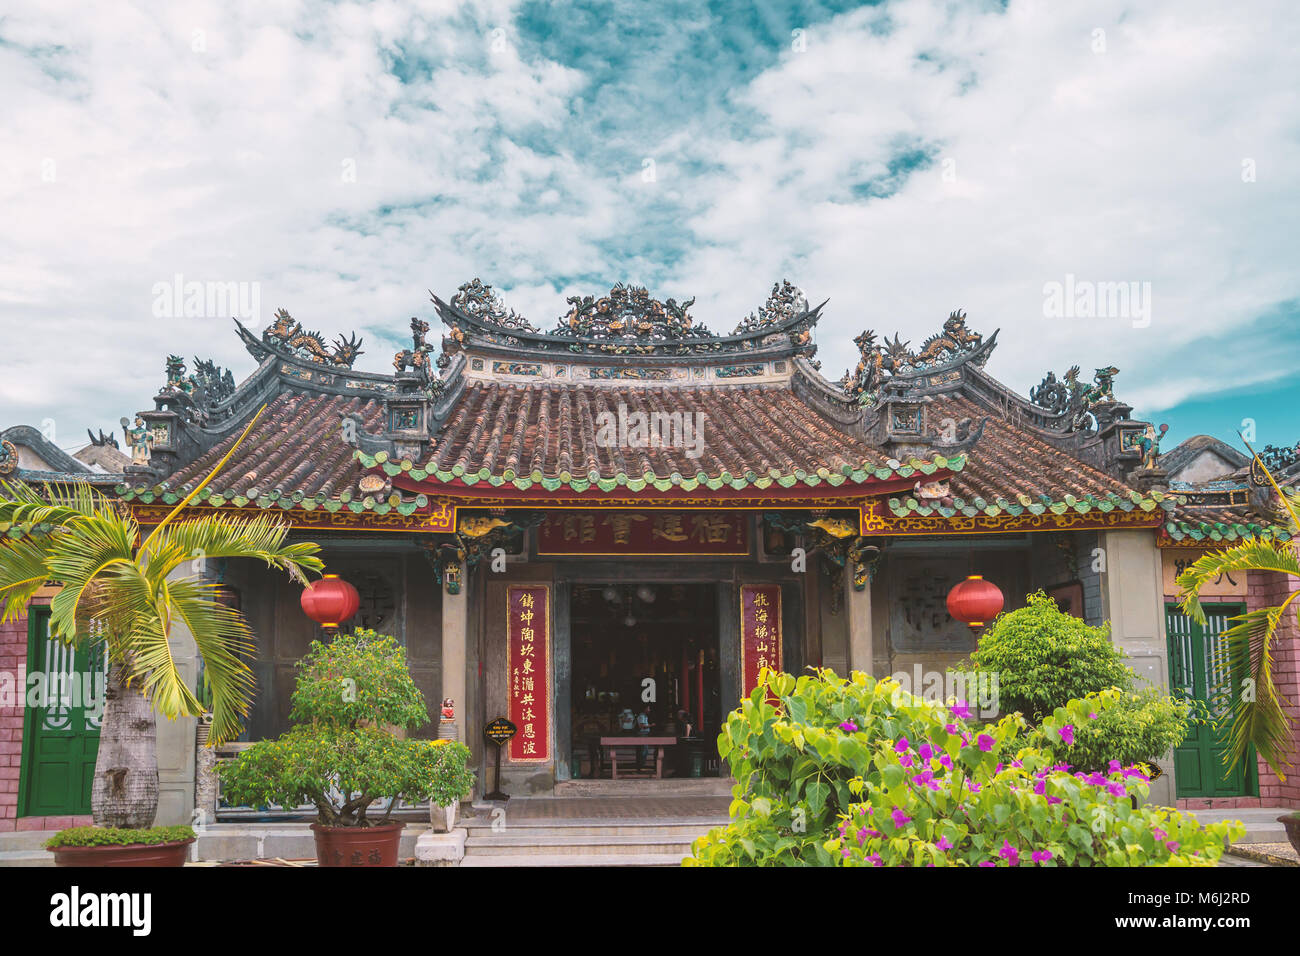 Ancien Temple au Vietnam Hoi An Banque D'Images